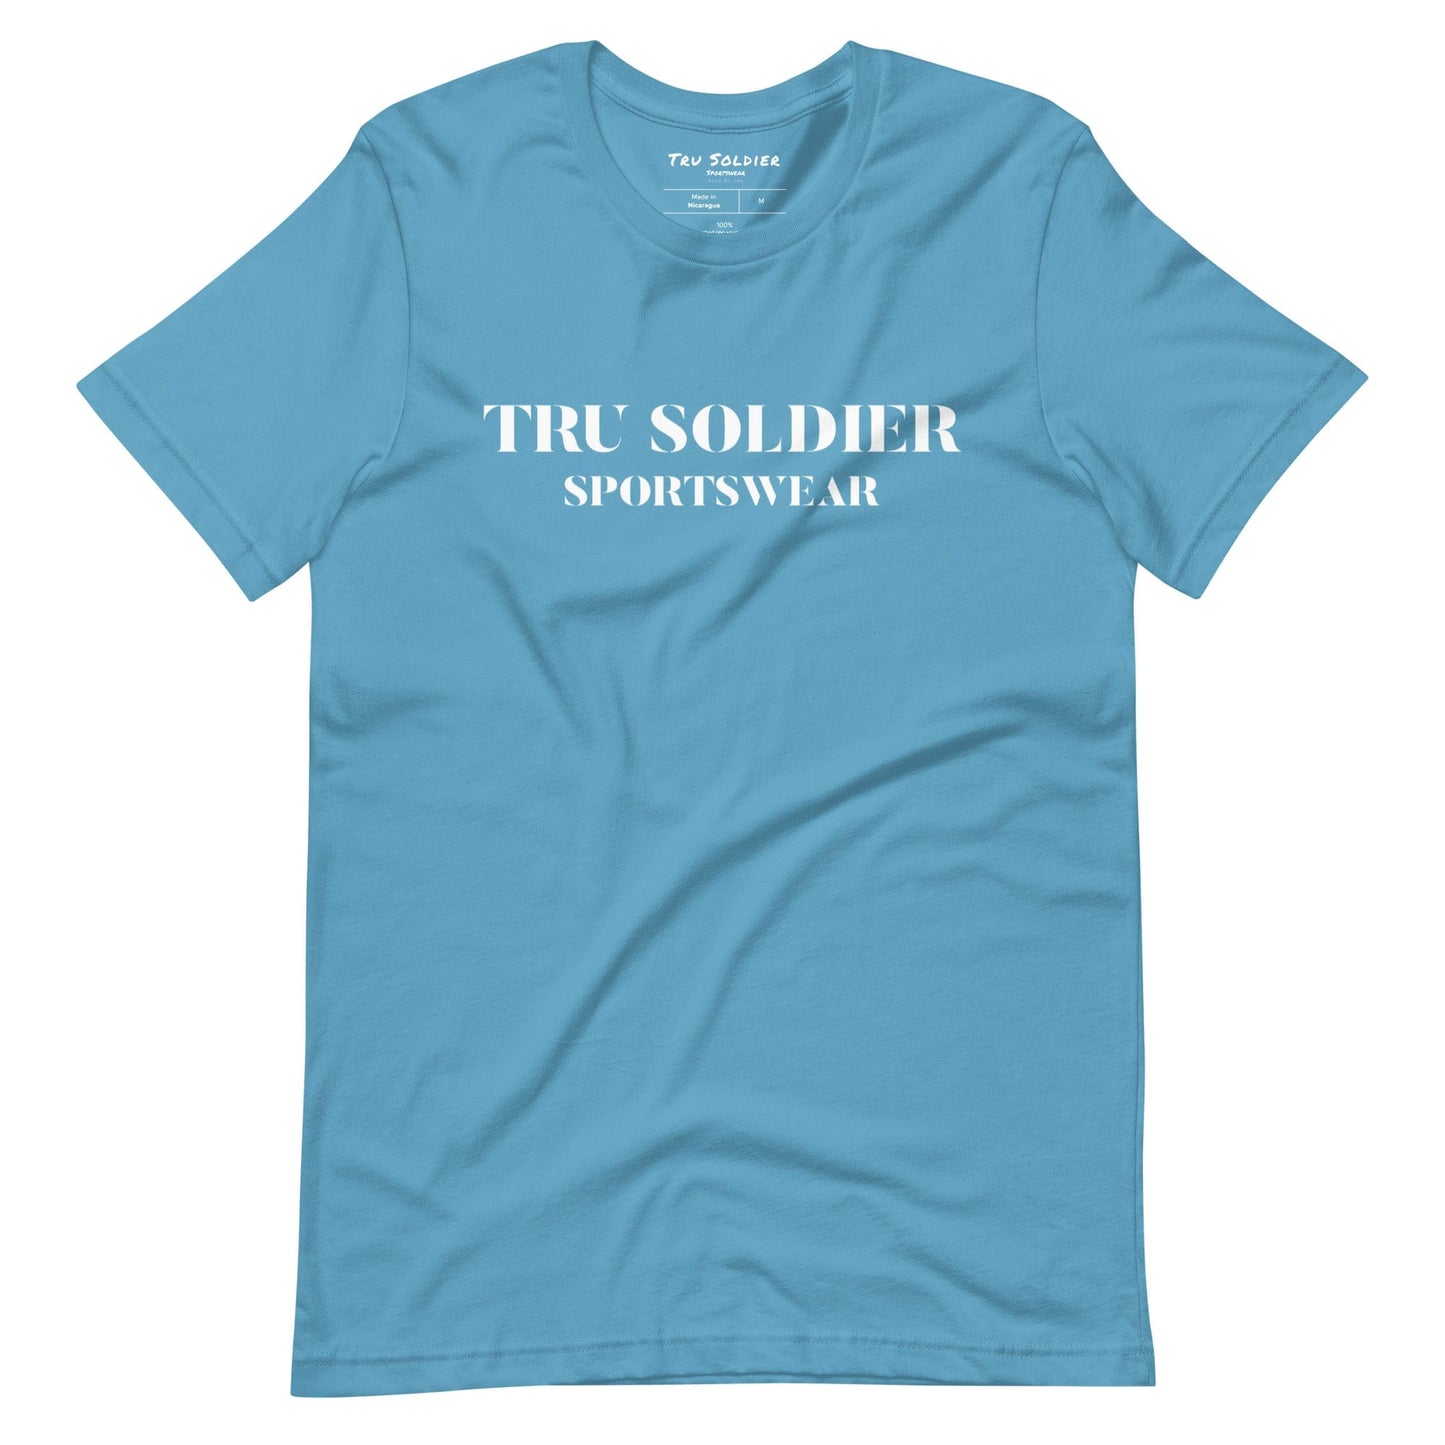 Tru Soldier Sportswear  Ocean Blue / S Tru Soldier Sportswear t-shirt